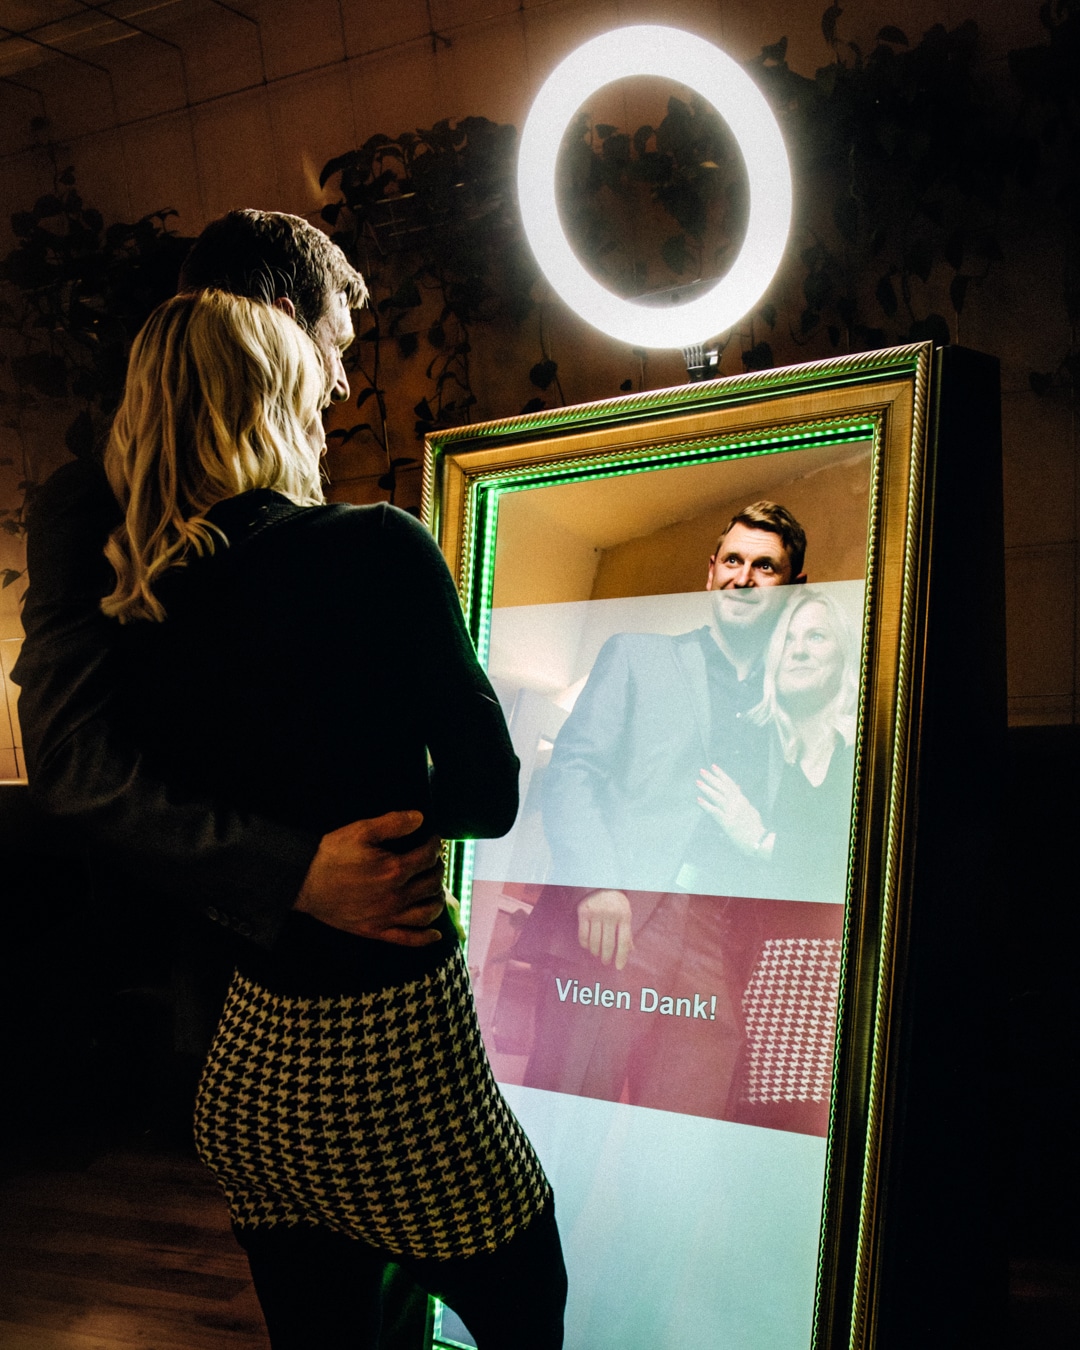 Fotospiegel (Fotobox) von Glüx mit einem Paar, das ein gemeinsames Erinnerungsfoto erstellt, umrahmt von einer stilvollen, beleuchteten Einfassung in einer eleganten Event-Umgebung in Bayreuth.